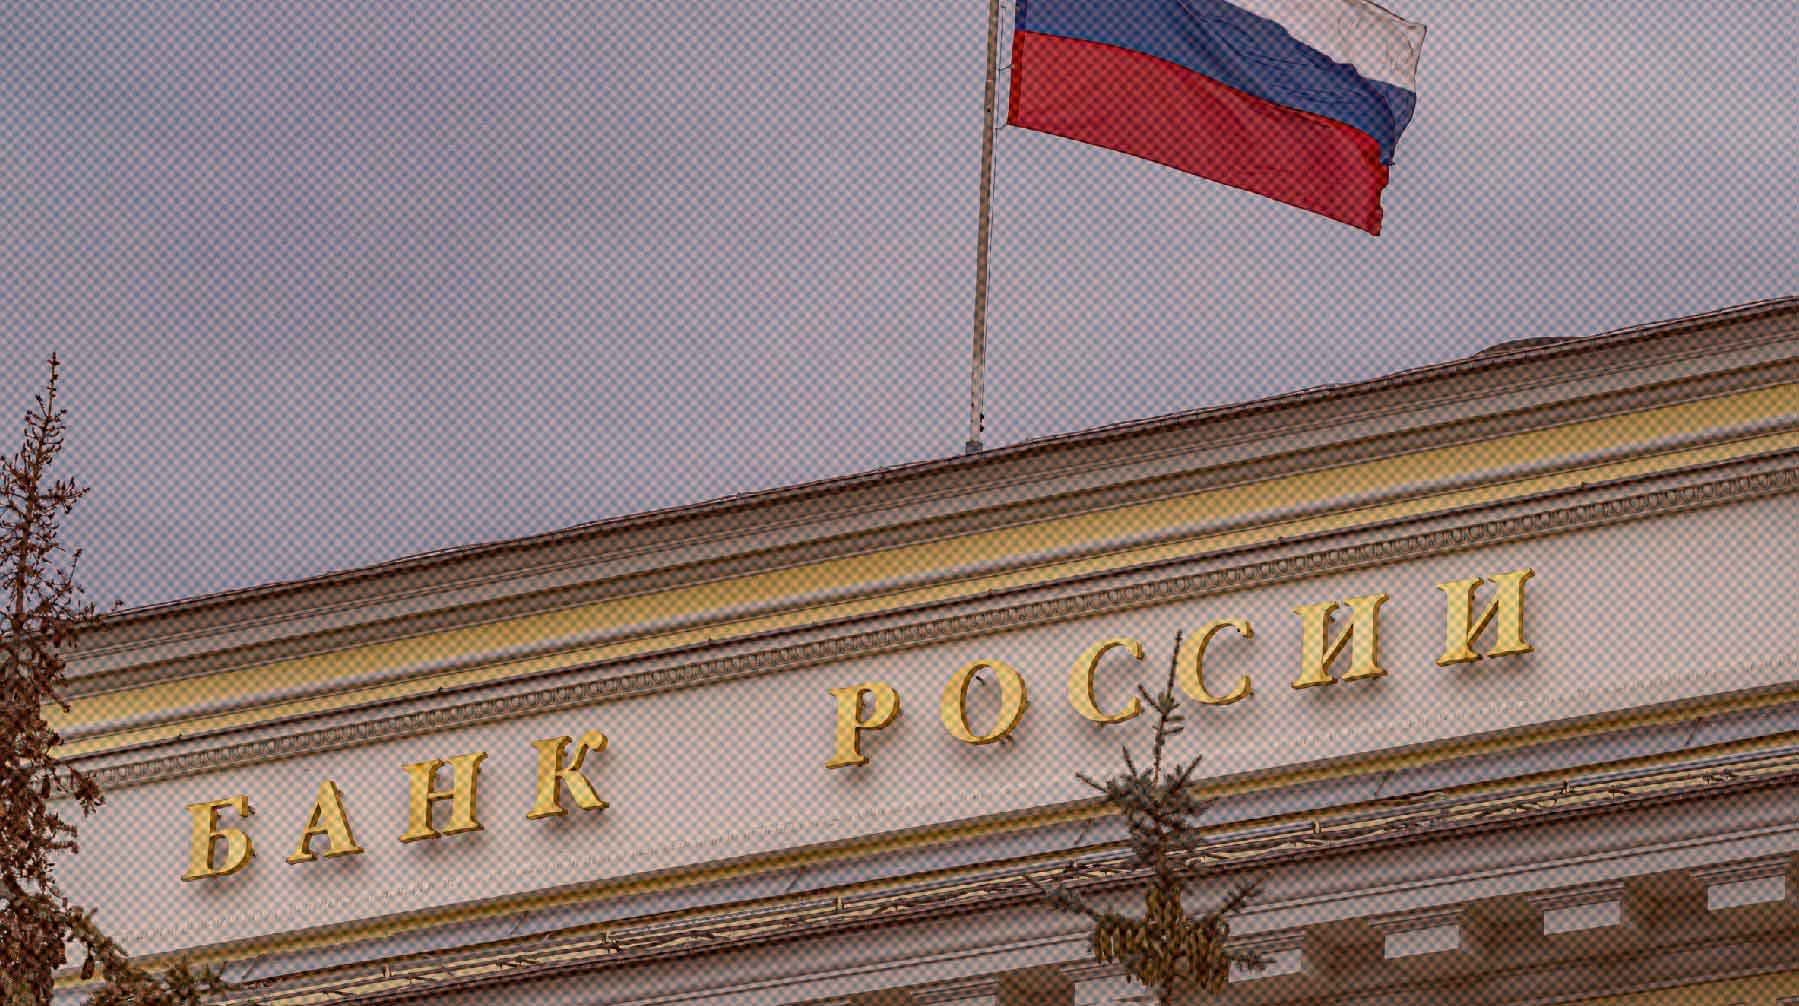 Dailystorm - Банк России сохранил ключевую ставку на уровне 7,5%